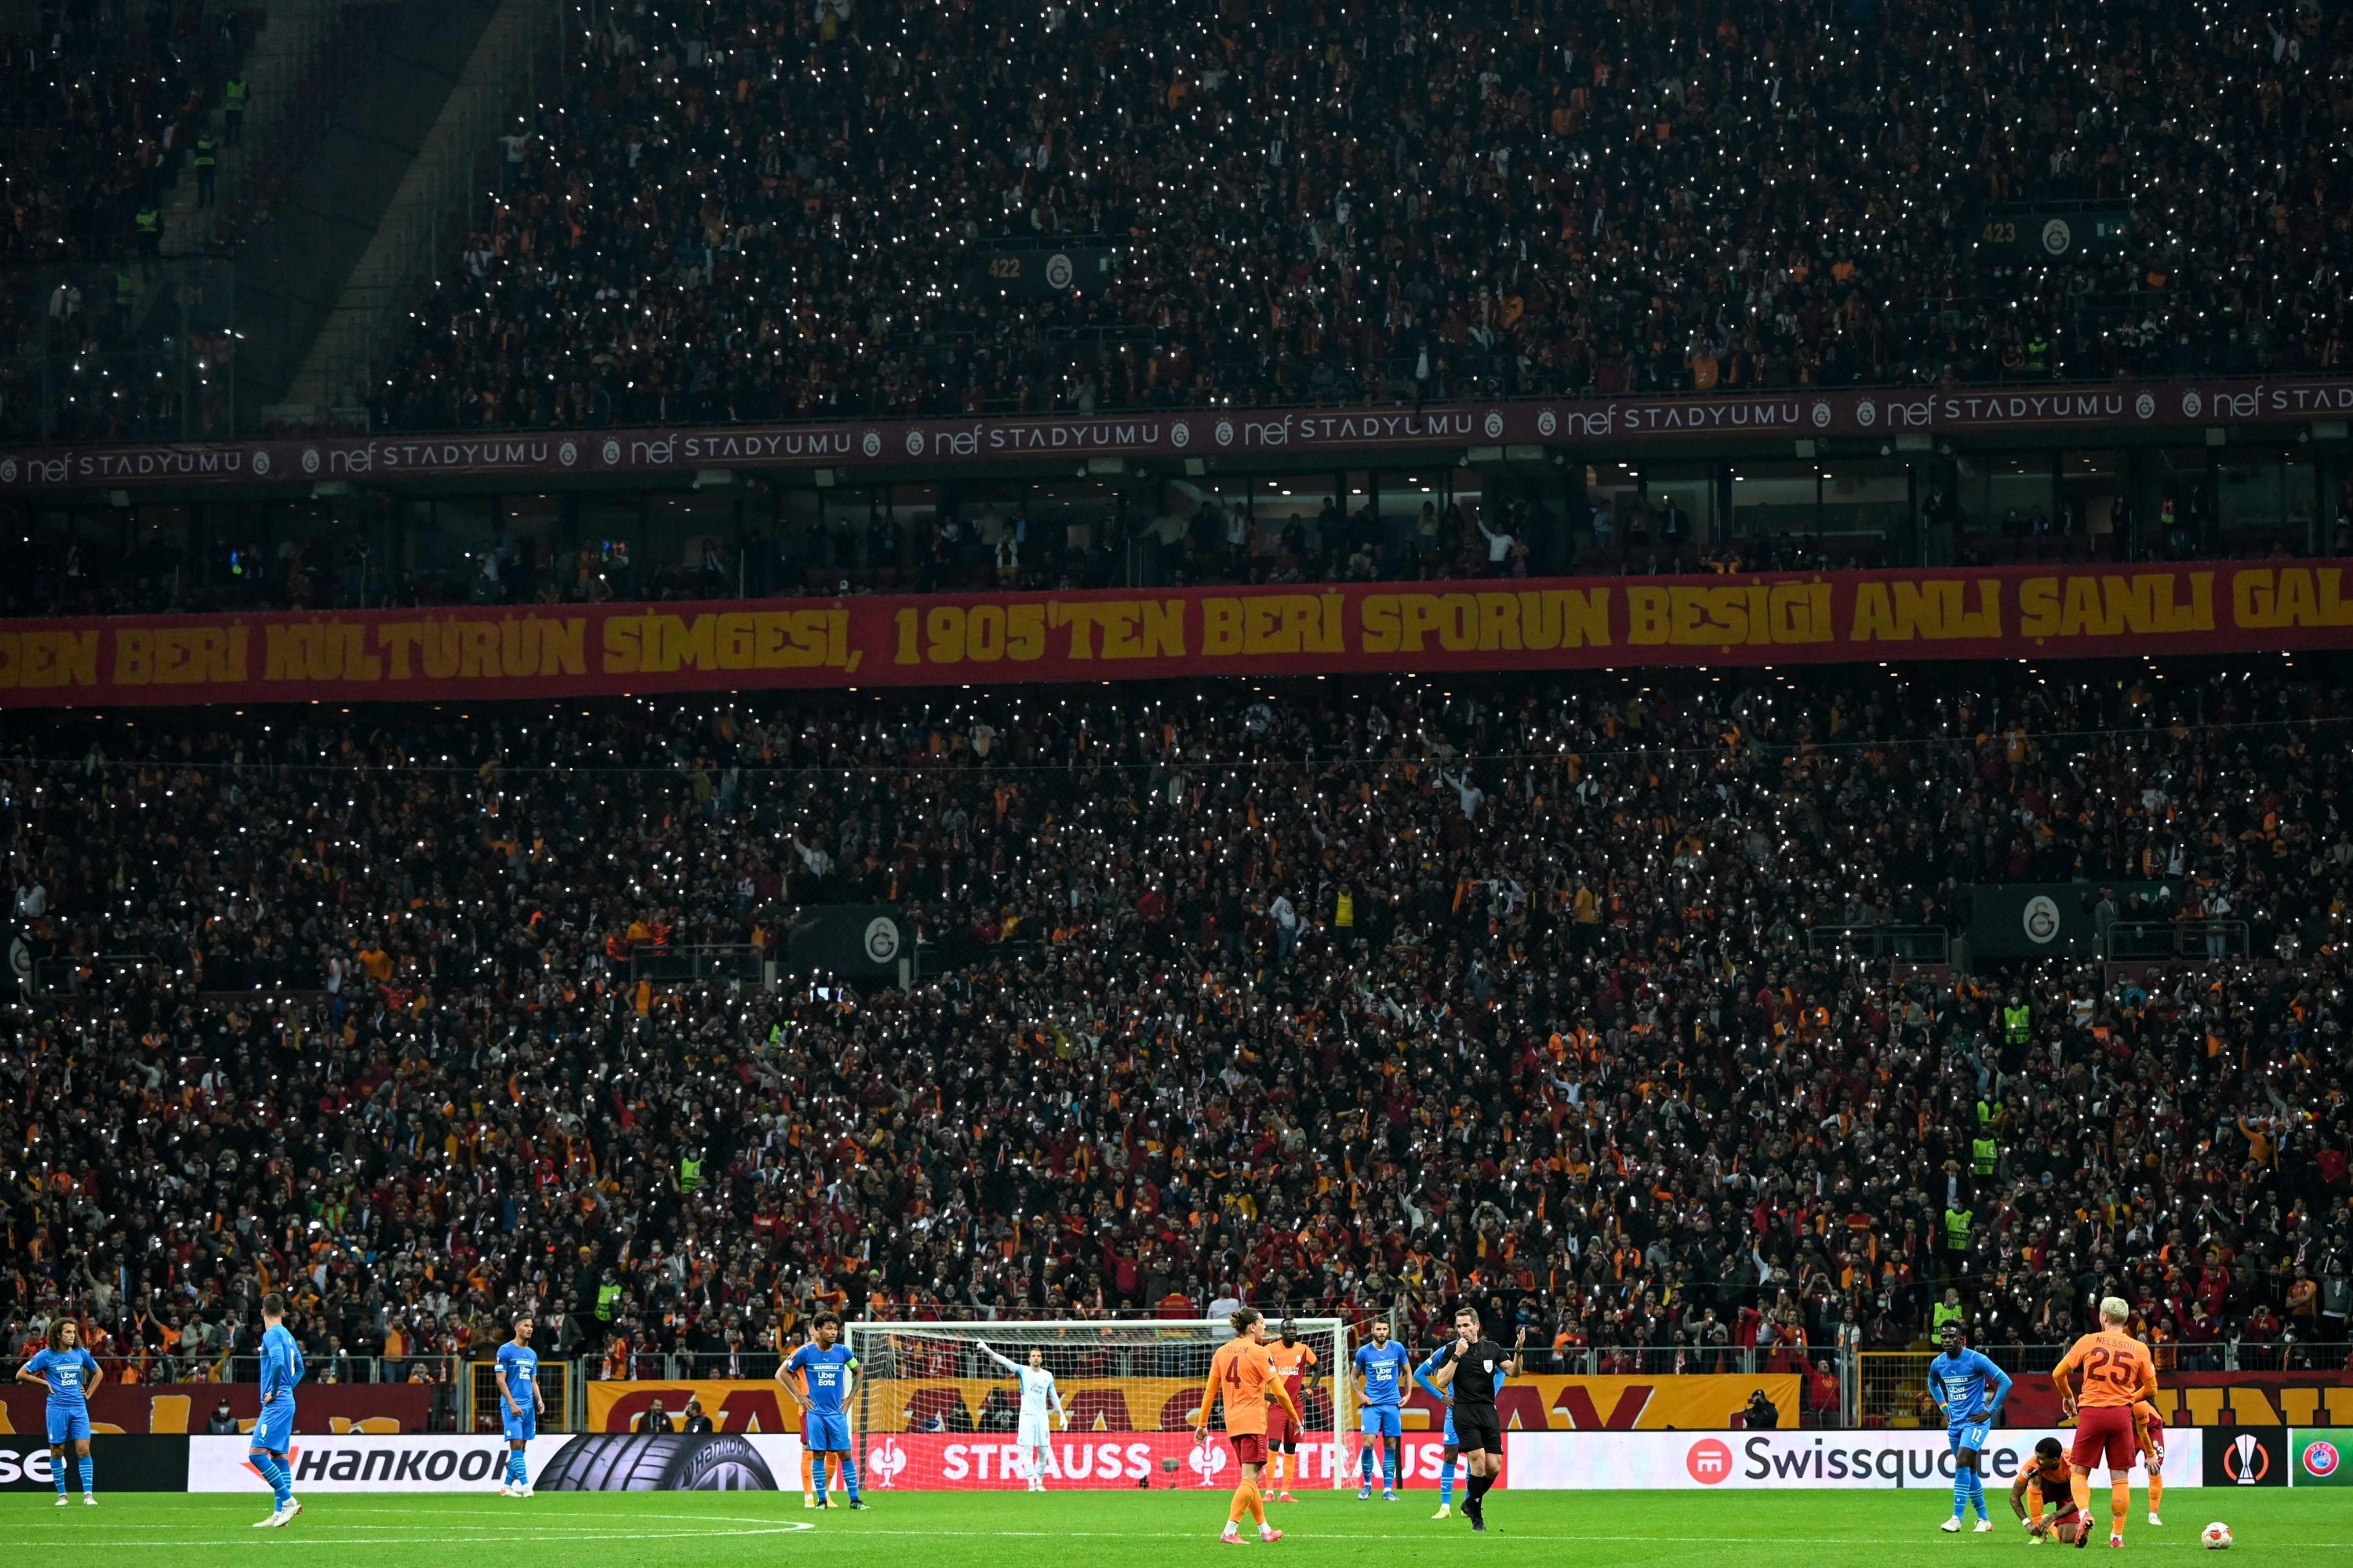 Pendukung menggunakan senter ponsel selama pertandingan sepak bola Liga Eropa UEFA antara Galatasaray dan Olympique de Marseille di Stadion Nef, di Istanbul, pada 25 November 2021. (AFP Photo)